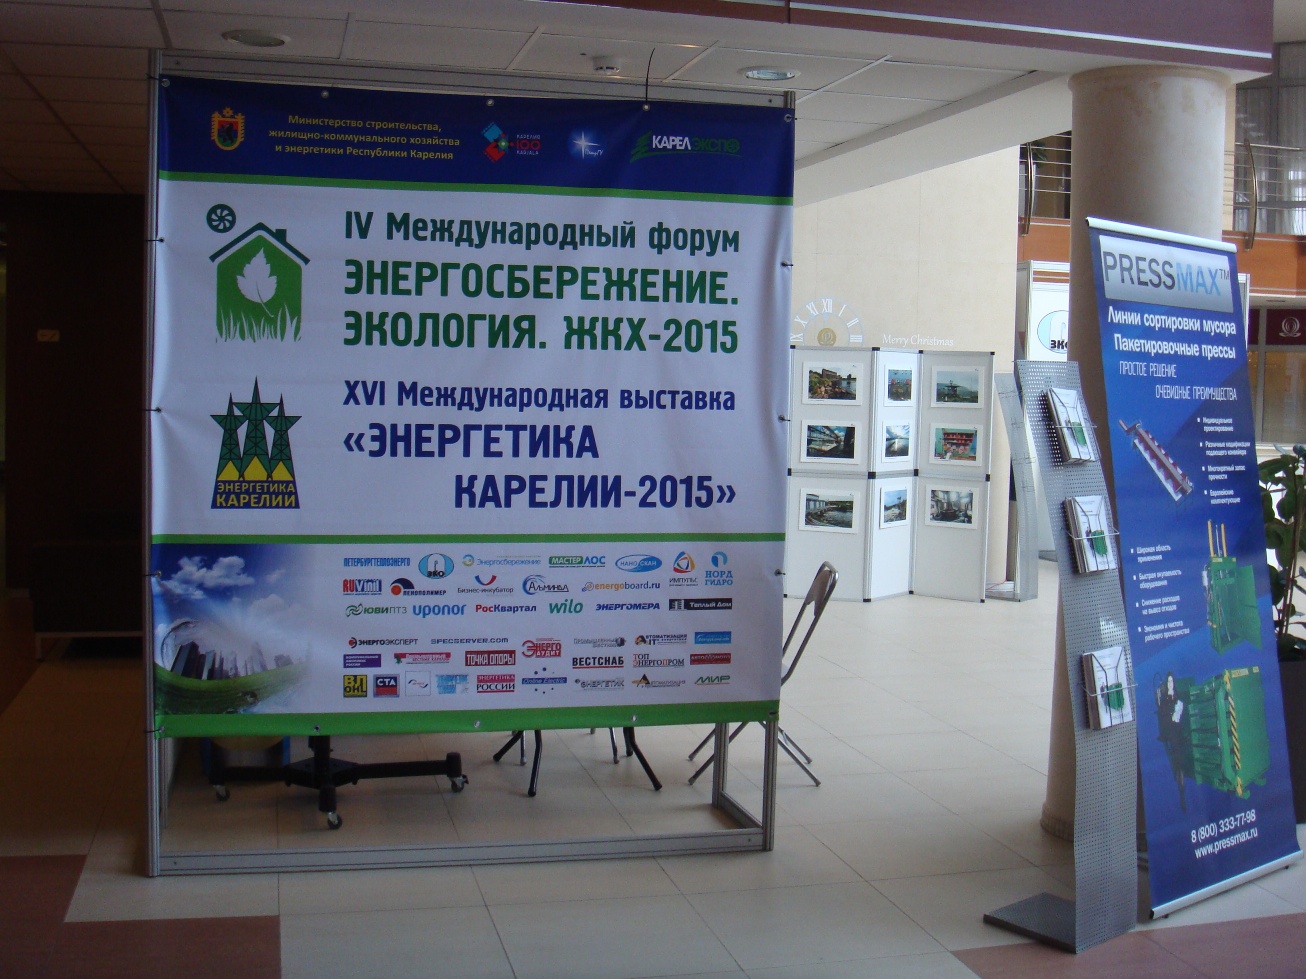 XVI Международная выставка «Энергетика Карелии - 2015» (г. Петрозаводск)